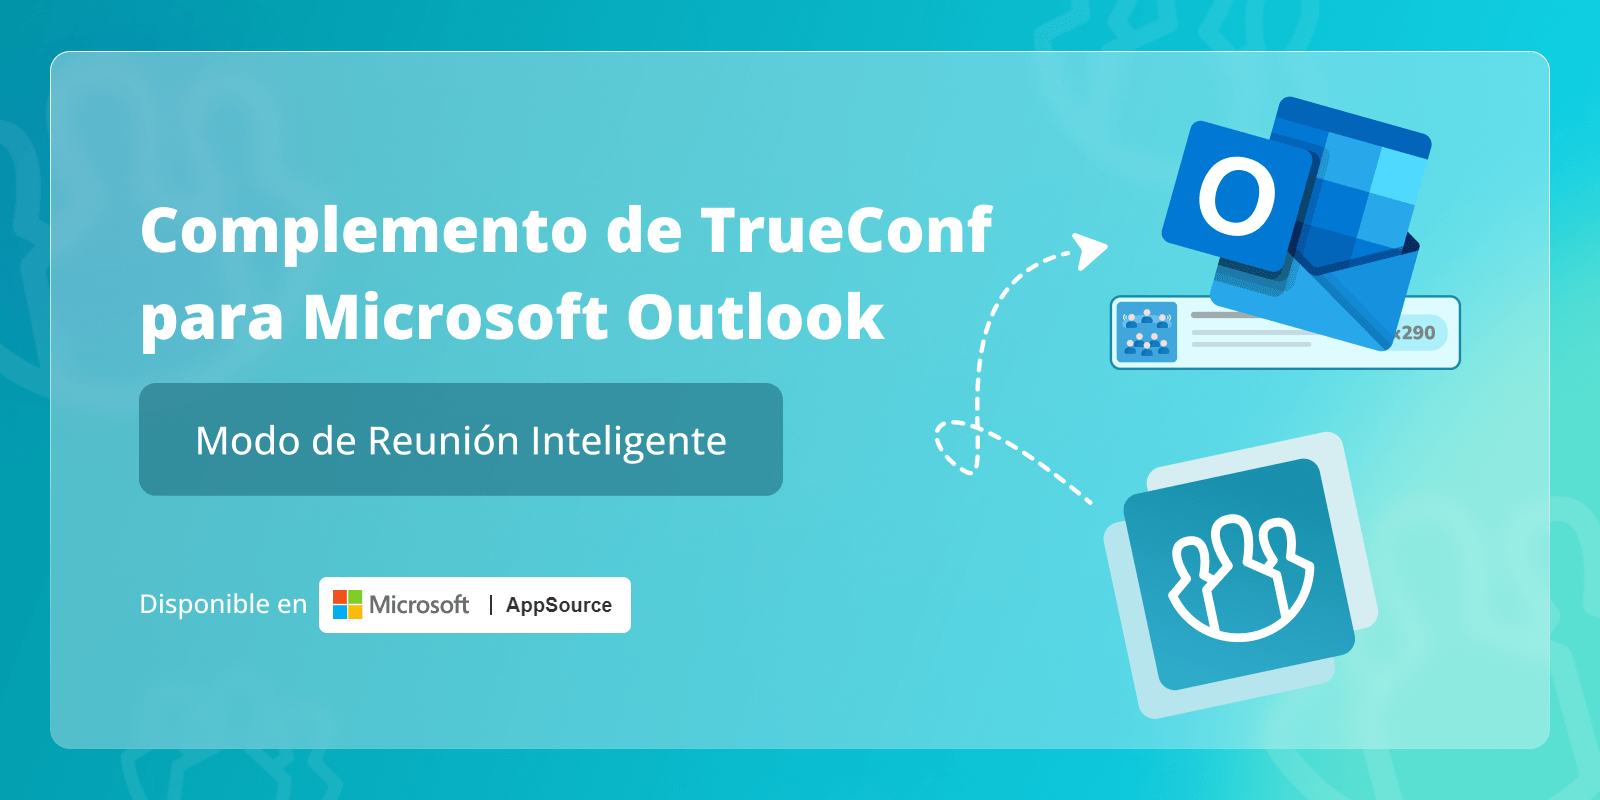 Modo de reunión inteligente en TrueConf para el complemento de Microsoft Outlook 2